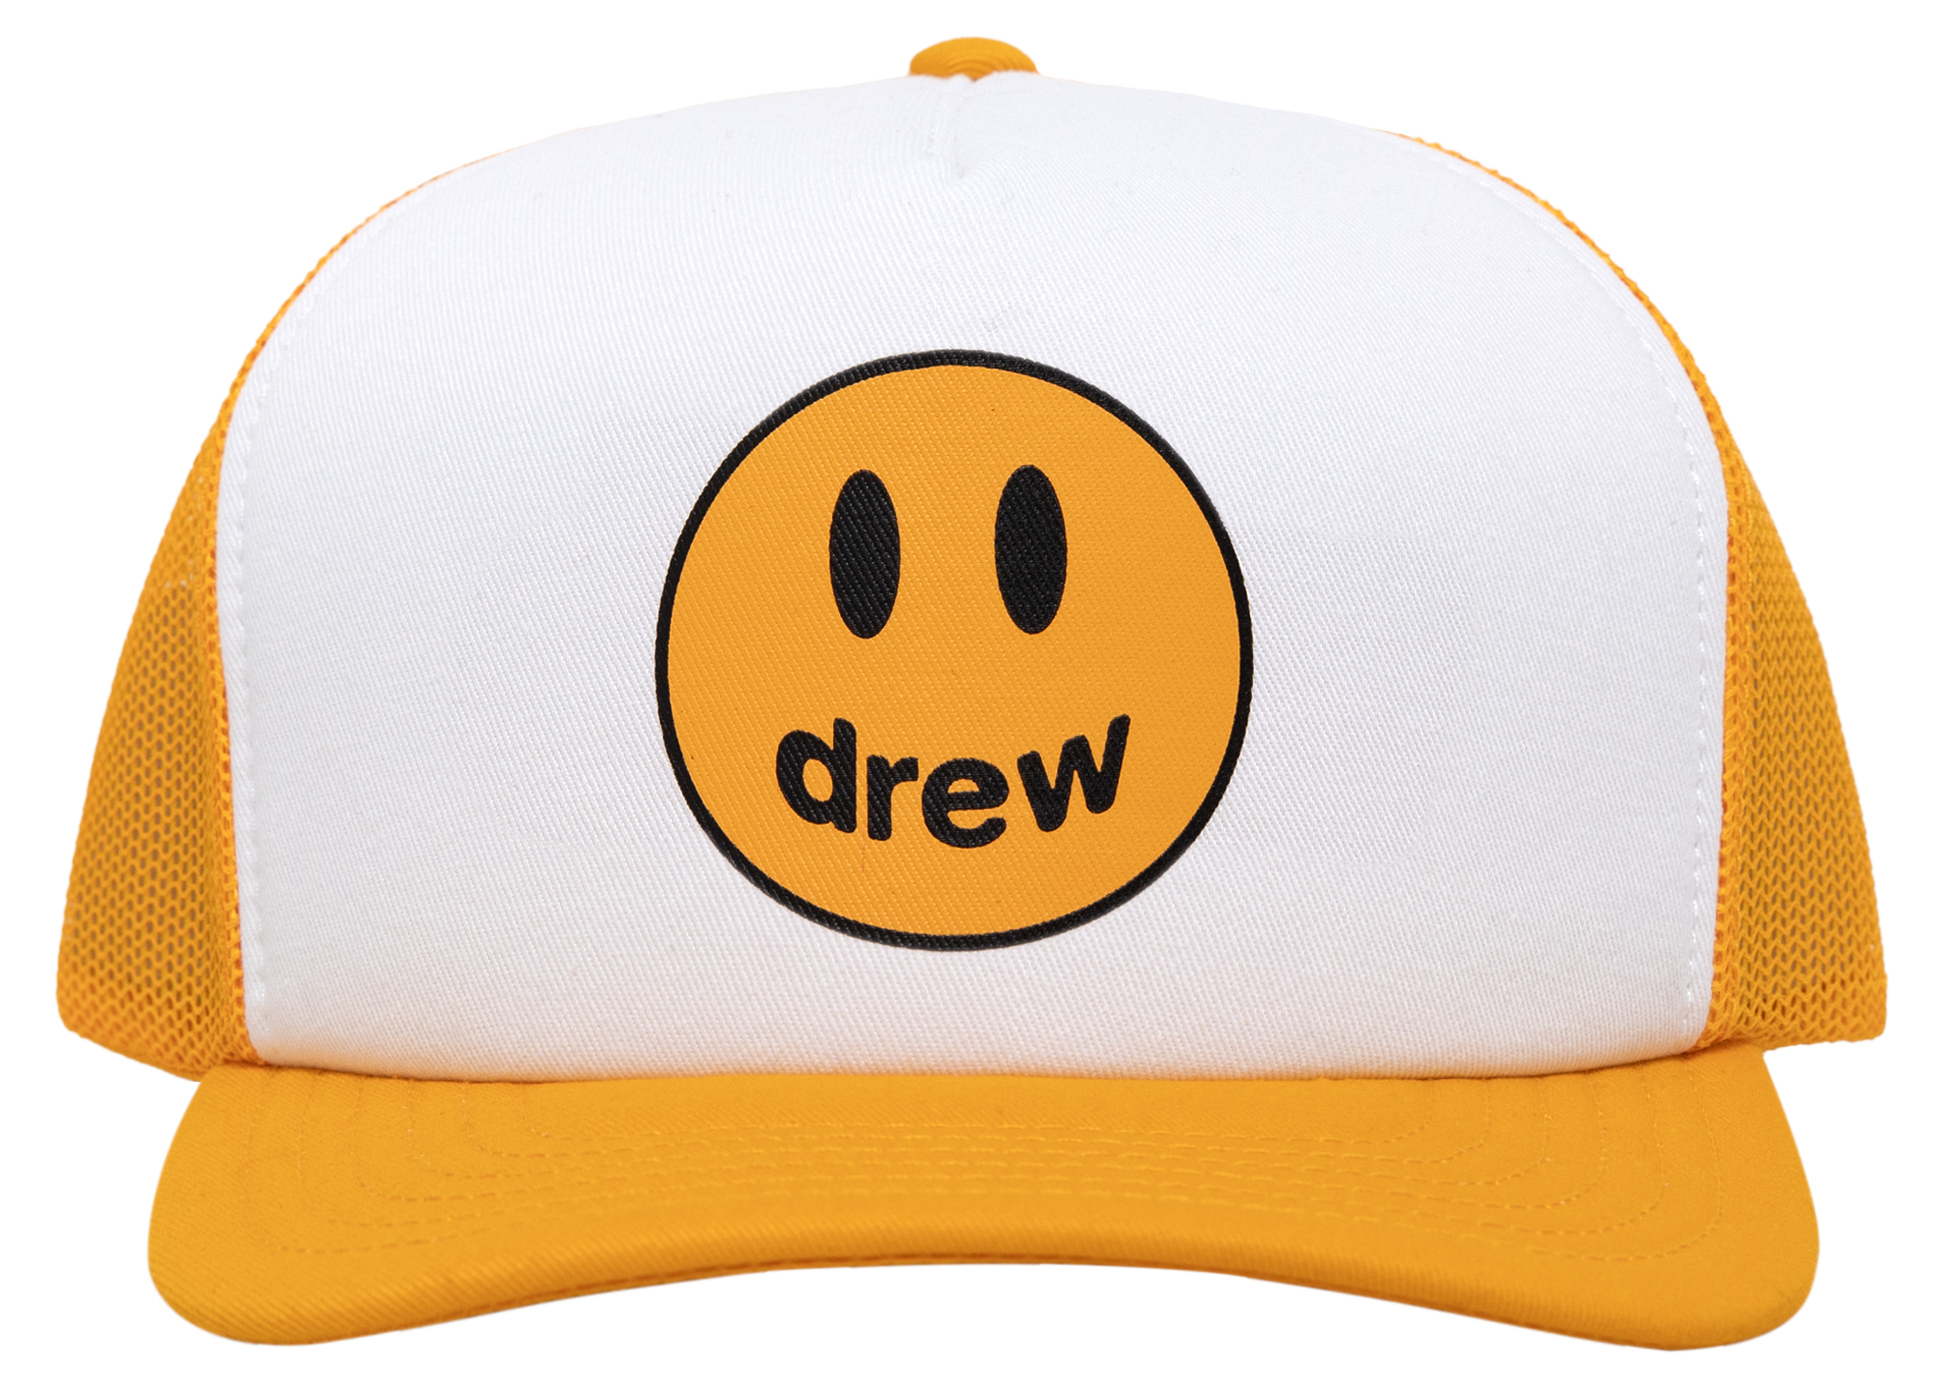 セール国産drew house mascot dad hat “white” キャップ キャップ